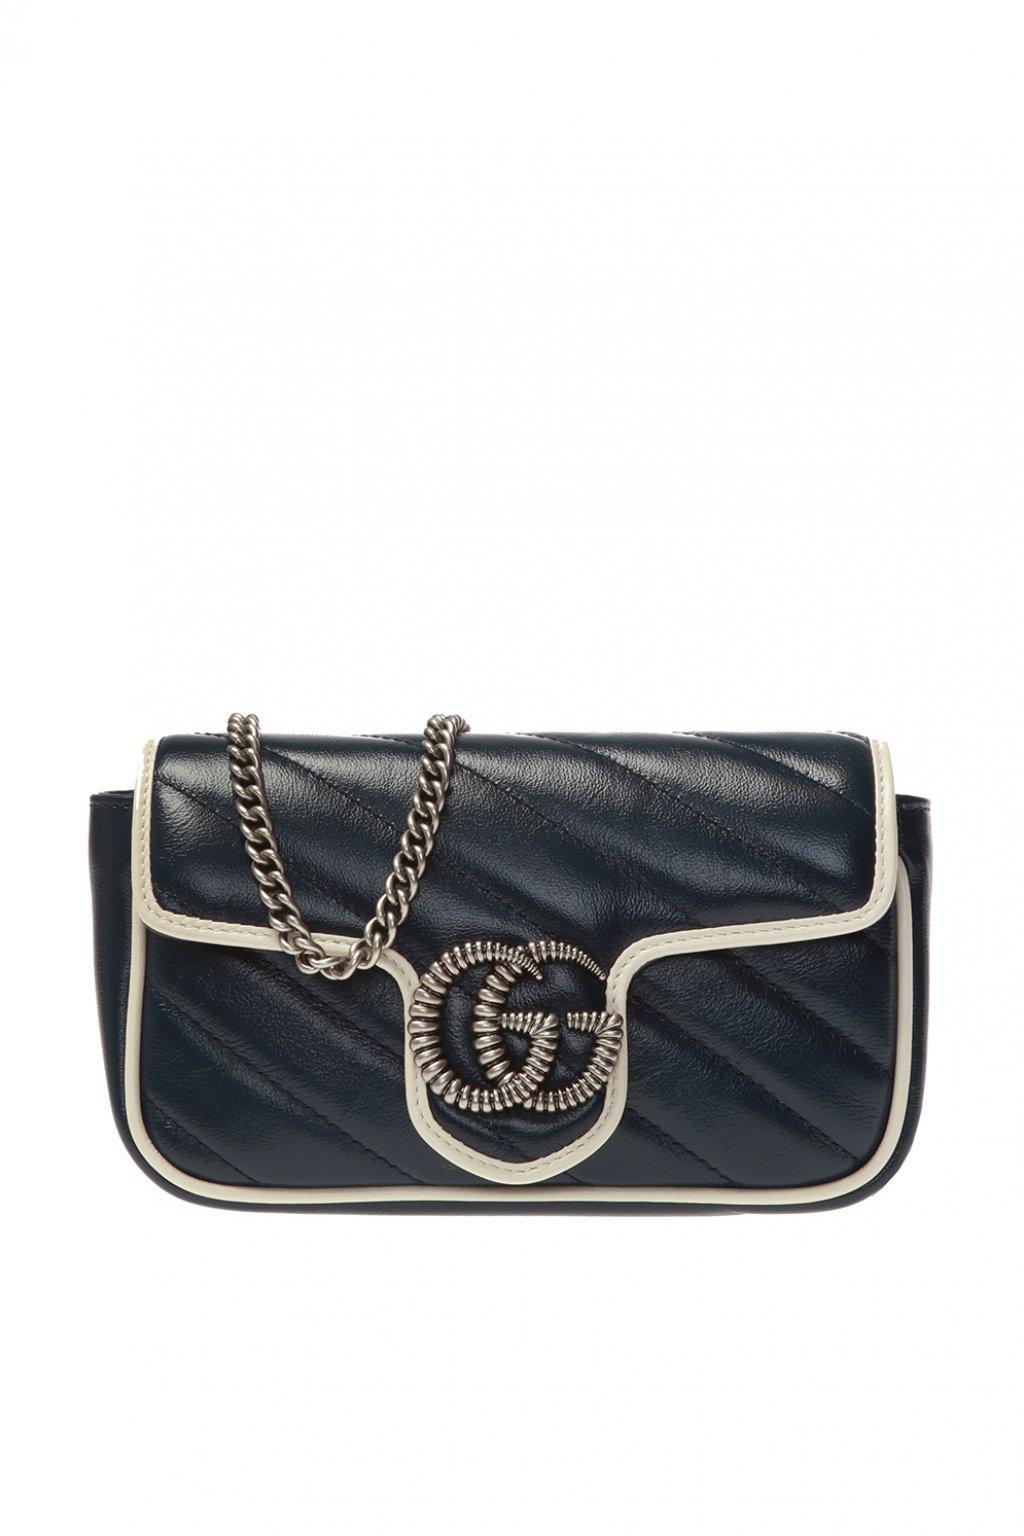 Gucci GG Marmont Super Mini Crossbody Bag Leather Blue Agata/white 